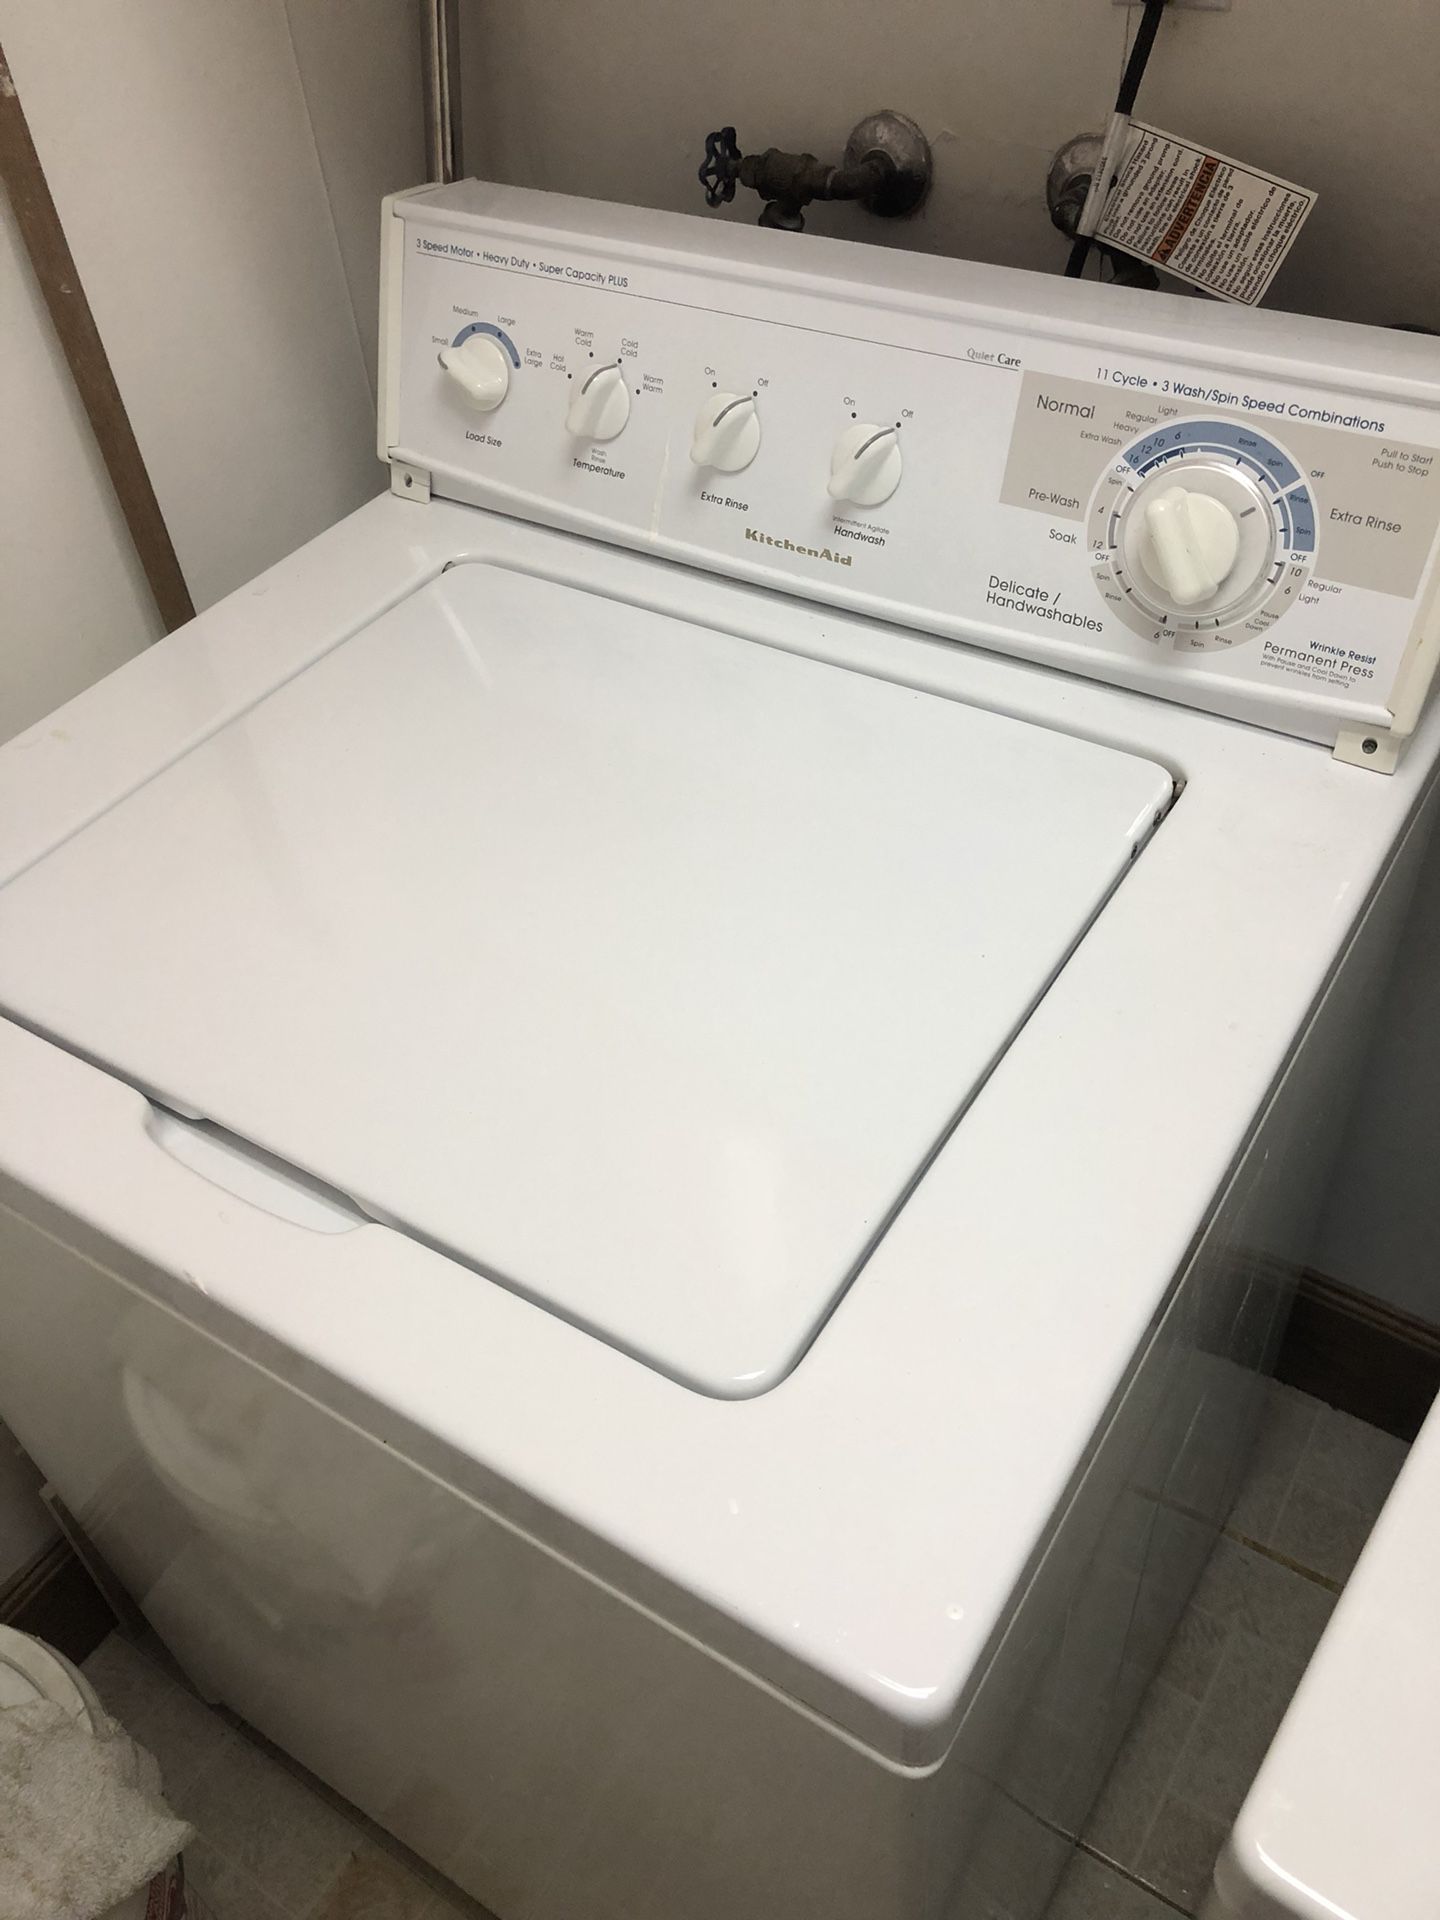 Kitchenaid Washer + Dryer